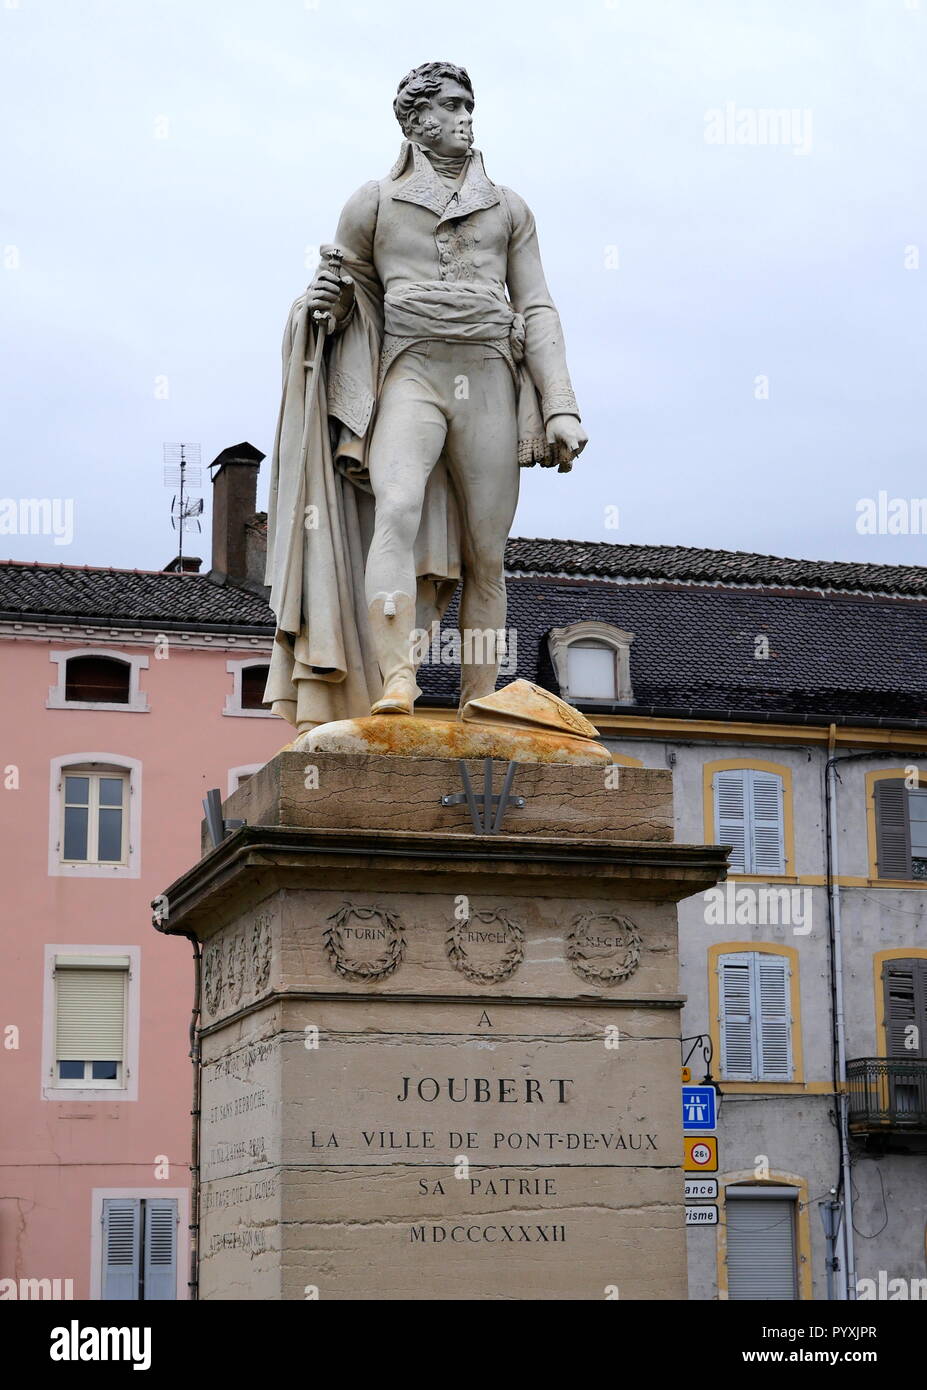 AJAXNETPHOTO. 2018. PONT DE VAUX, Frankreich. - Jugendliche allgemein - STATUE VON SOLDAT UND GENERAL BARTHELEMY CATHERINE JOUBERT (1769-1799) IM ZENTRUM DER STADT. JOUBERT hier geboren wurde, starb IN DER SCHLACHT VON NOVI, Italien. Foto: Jonathan Eastland/AJAX REF: GX8 180910 852 Stockfoto